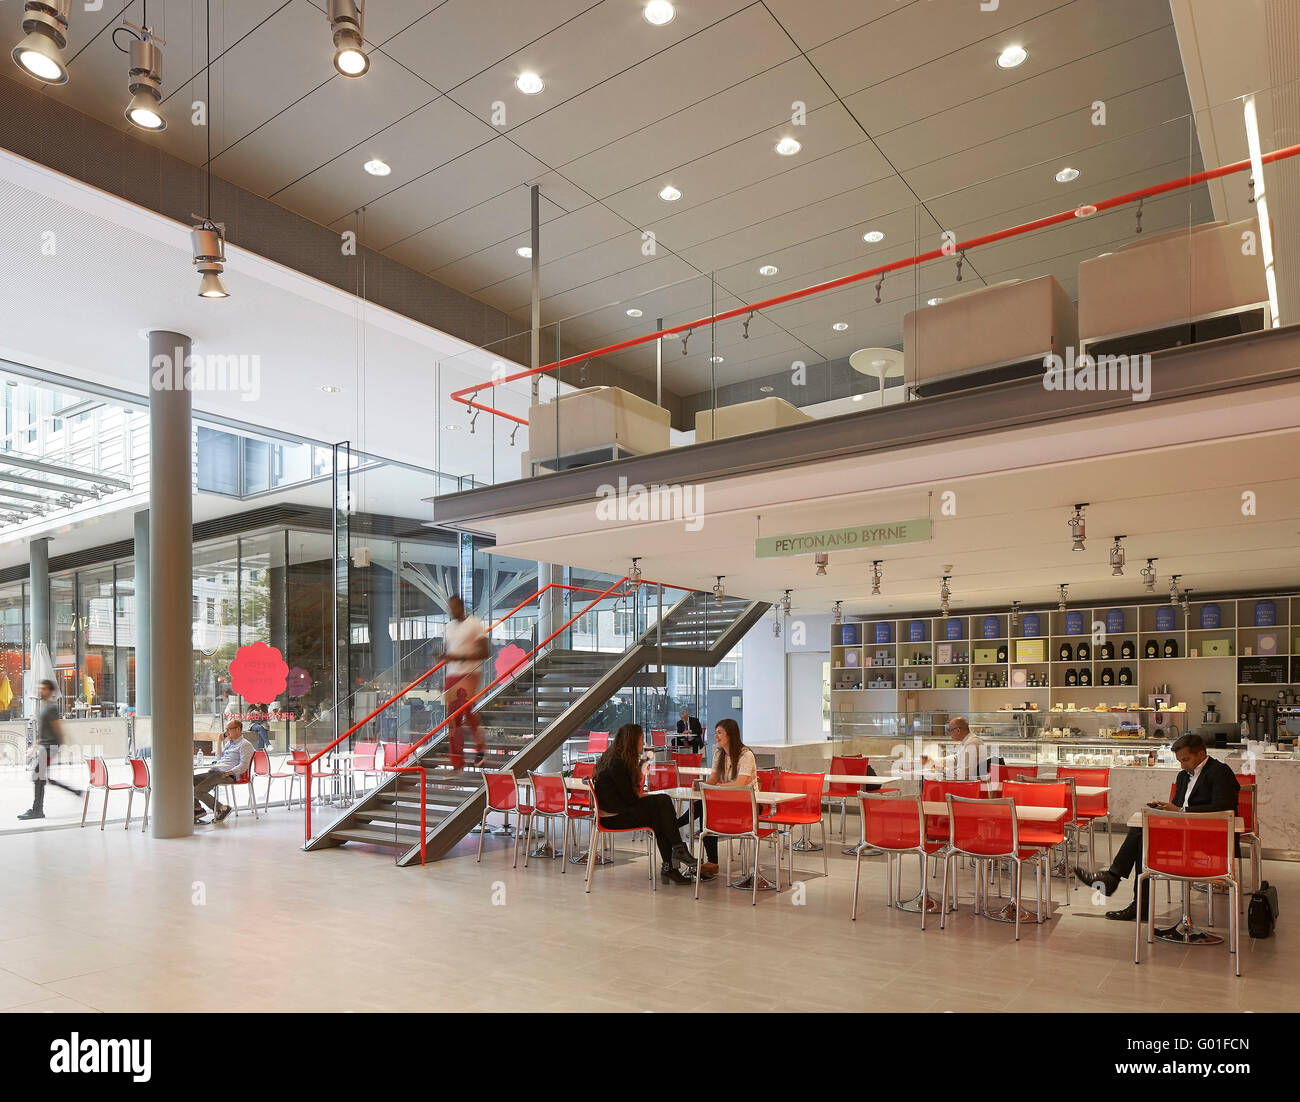 El restaurante de planta baja con entresuelo. Central Saint Giles, Londres, Reino Unido. Arquitecto: Renzo Piano Building Workshop, 2015. Foto de stock